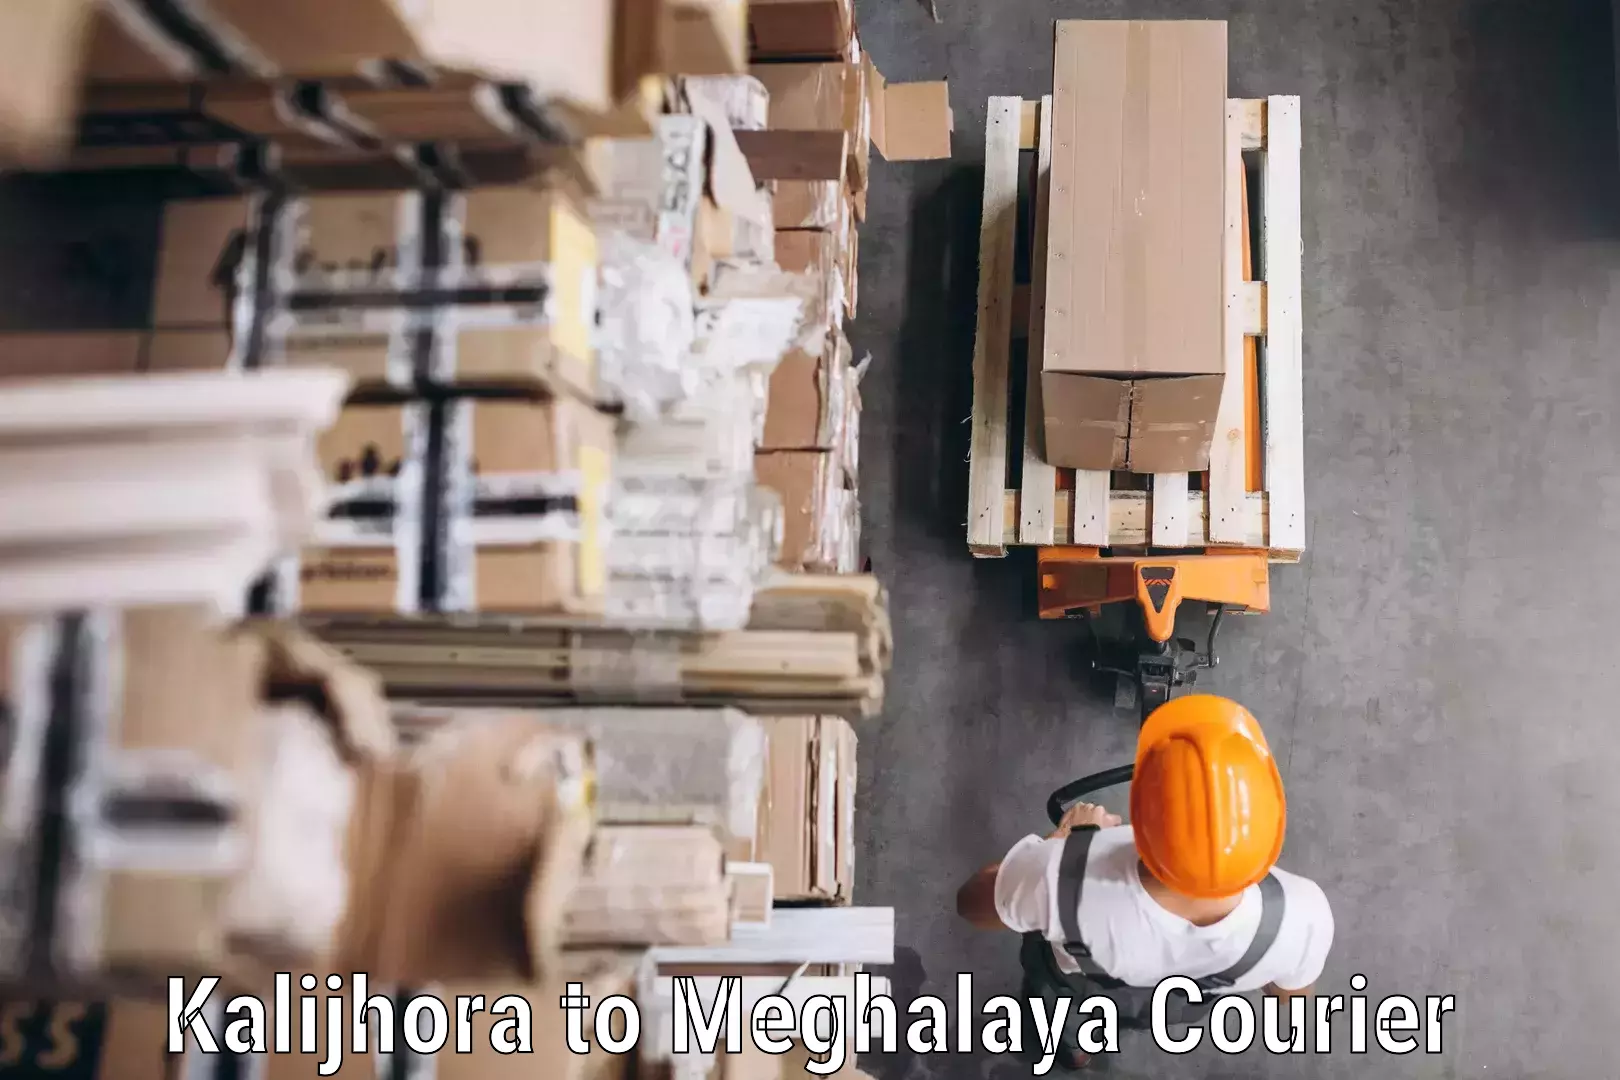 Express mail solutions Kalijhora to Meghalaya